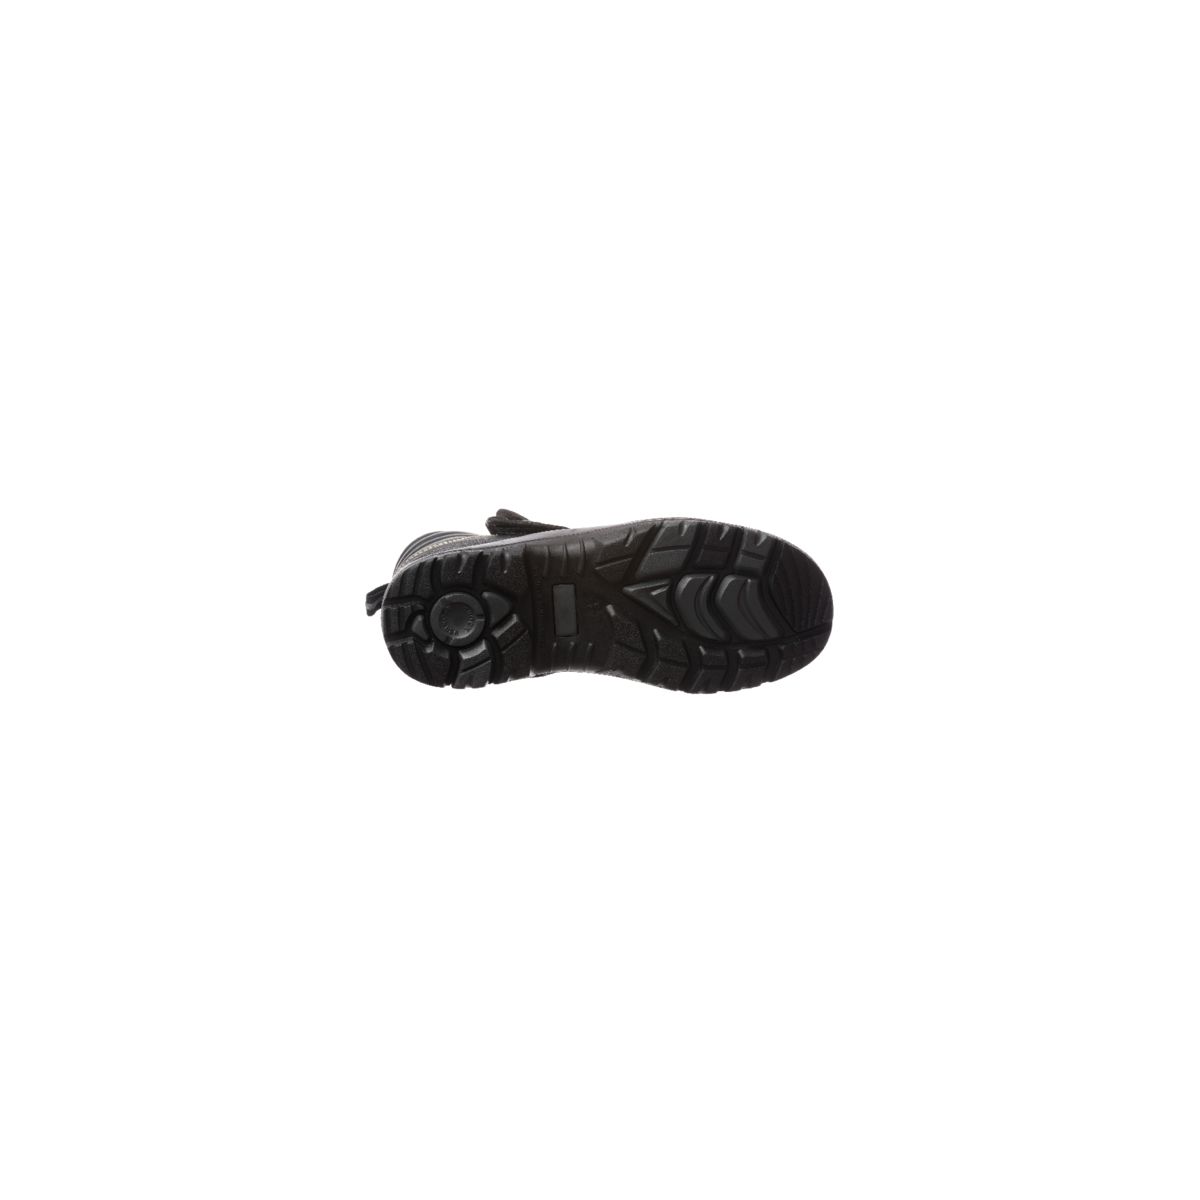 Chaussure de sécurité QANDILITE S3 SRC HRO soudeur composite - COVERGUARD - Taille 43 1